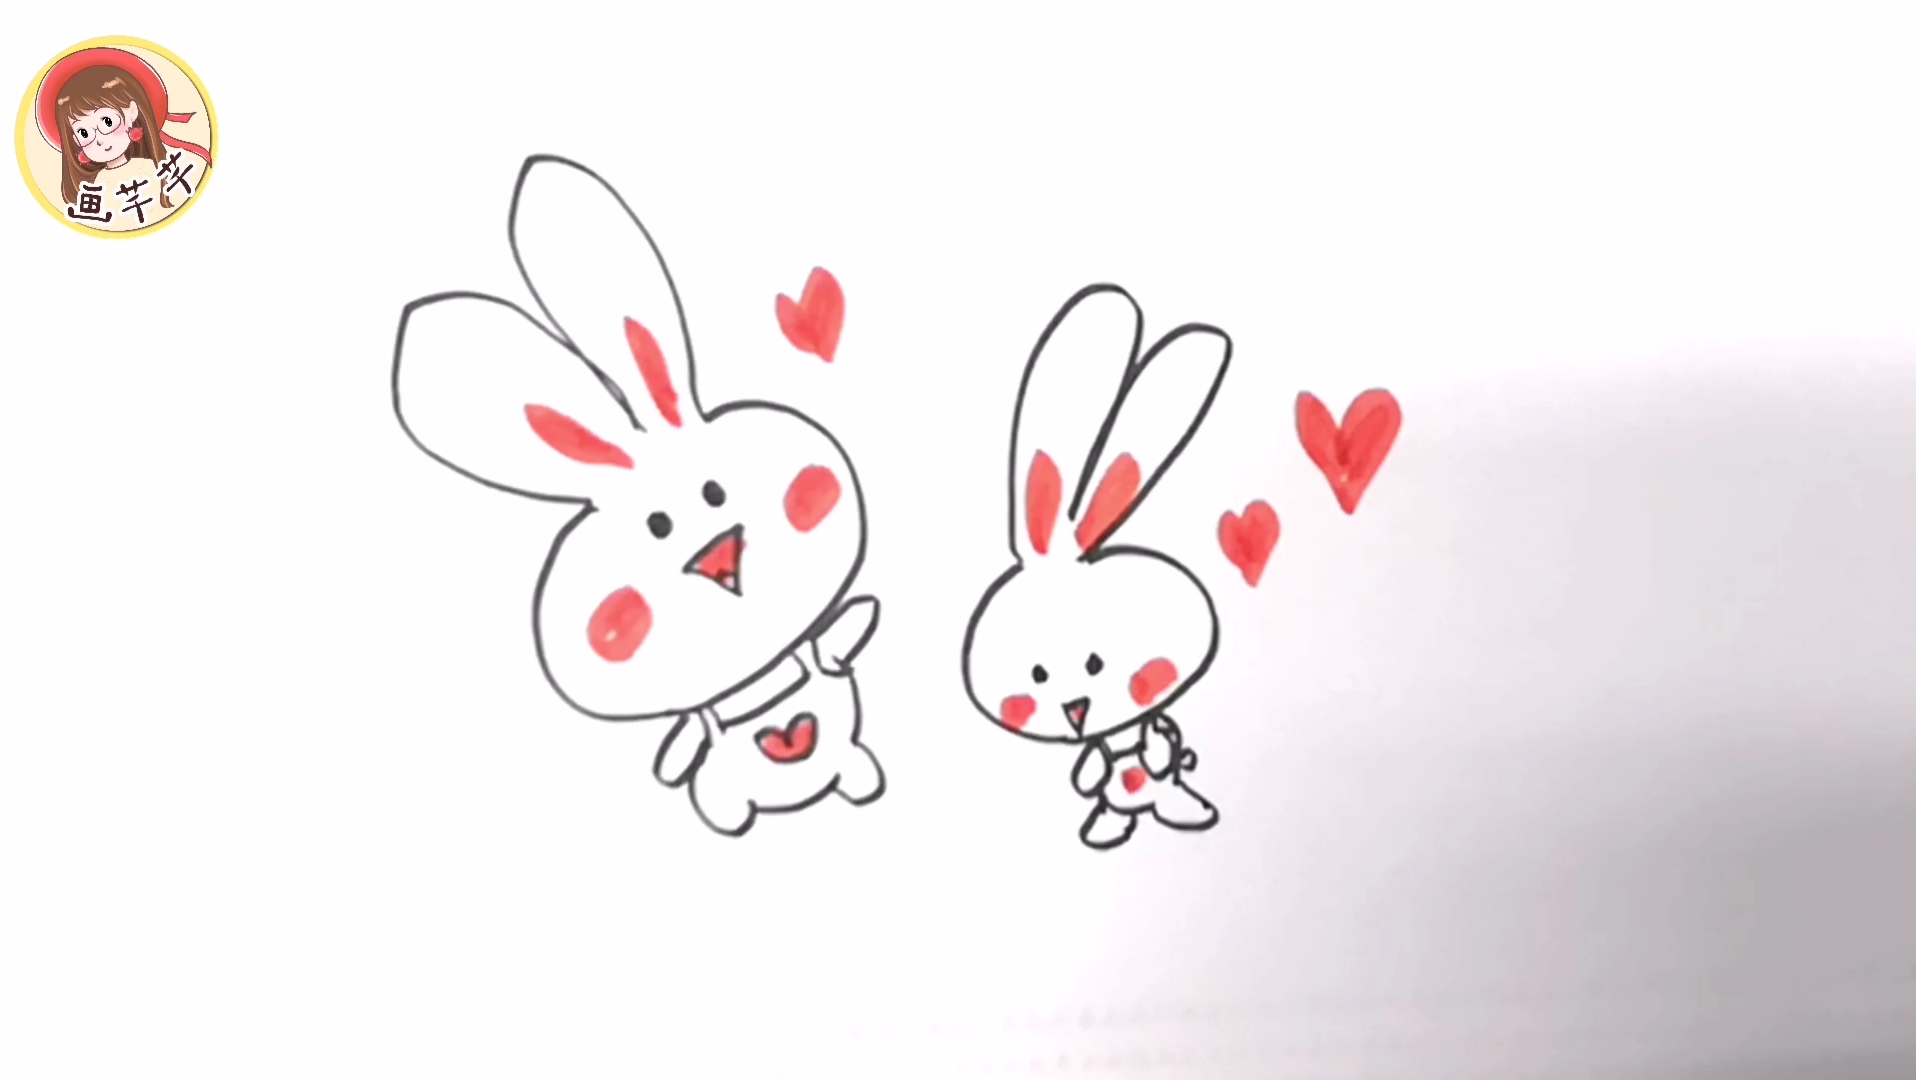 两只小兔子图片简笔画图片